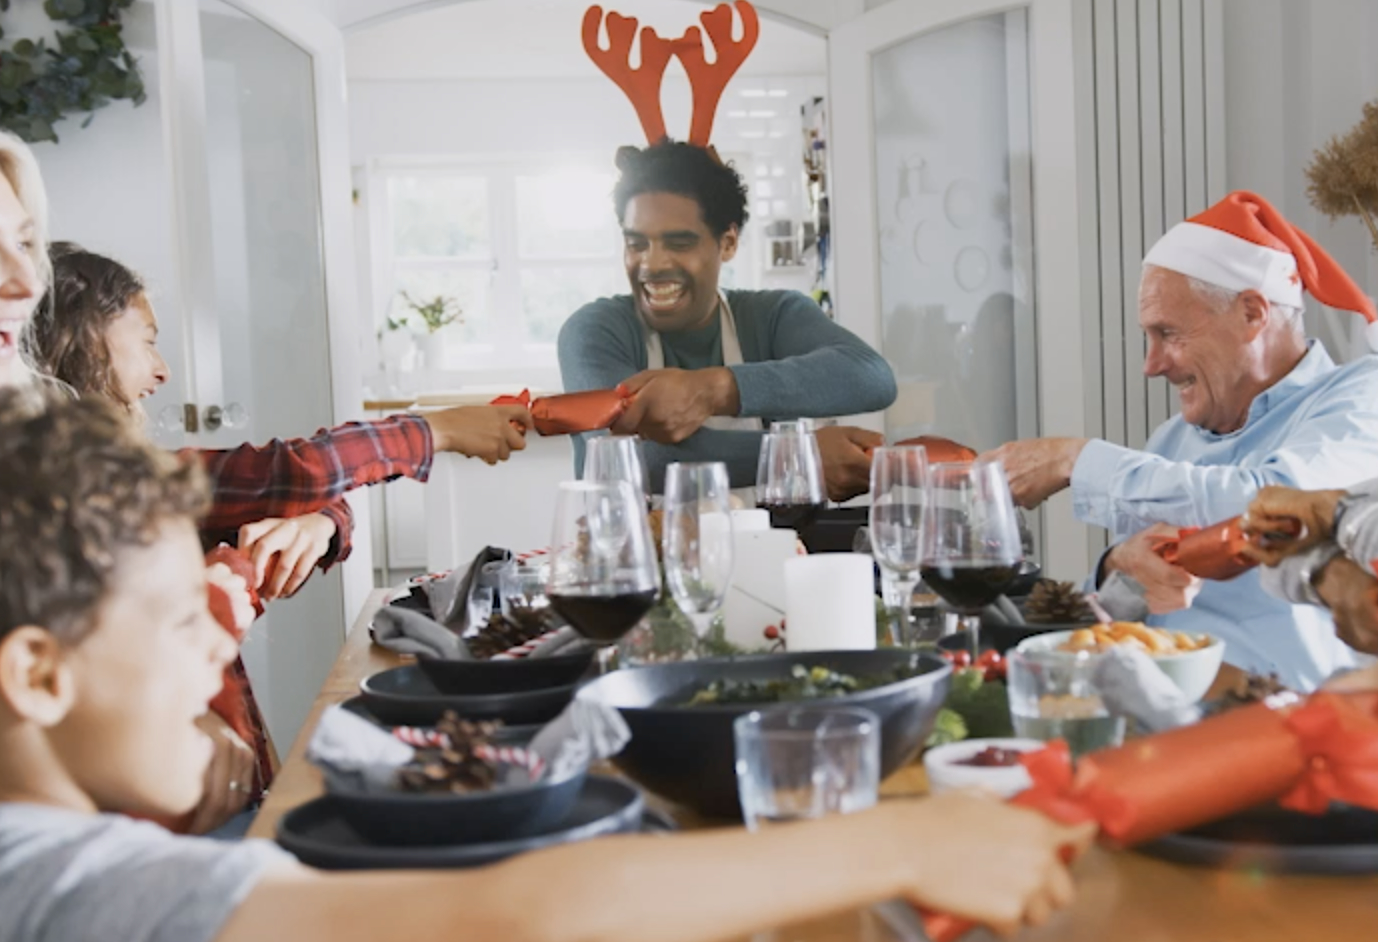 Multigenerationelle Familie zieht Weihnachtsknallbonbons, während sie am Tisch zum Essen sitzt.